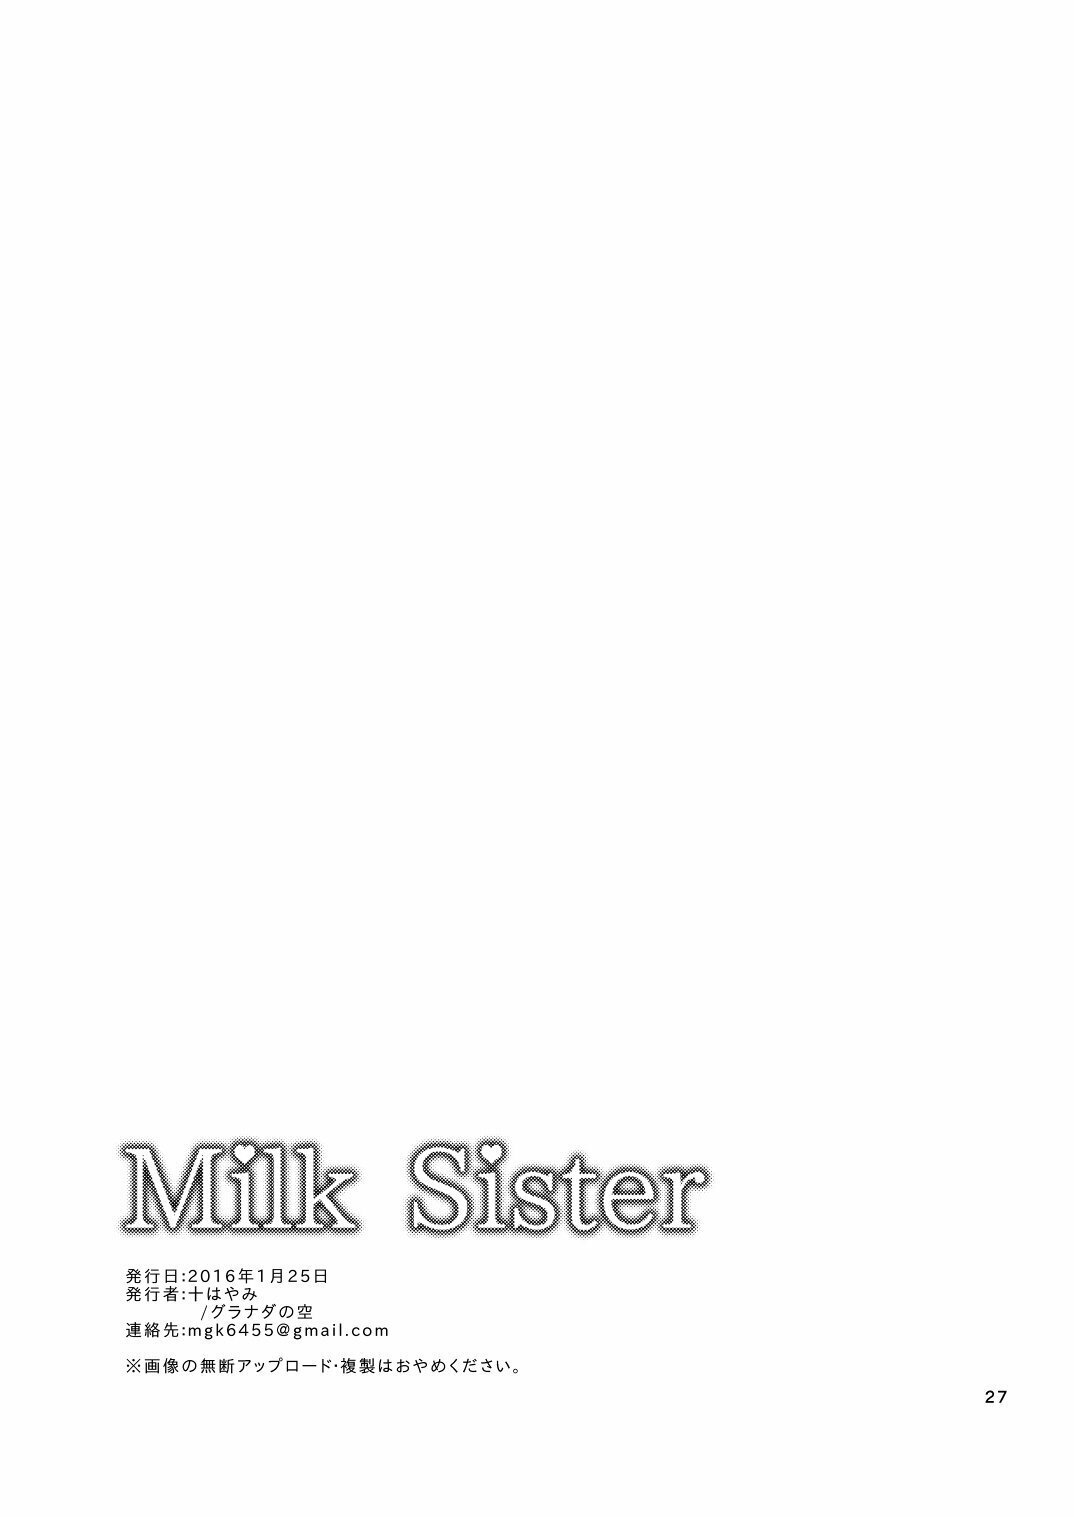 Milk Sister - 26